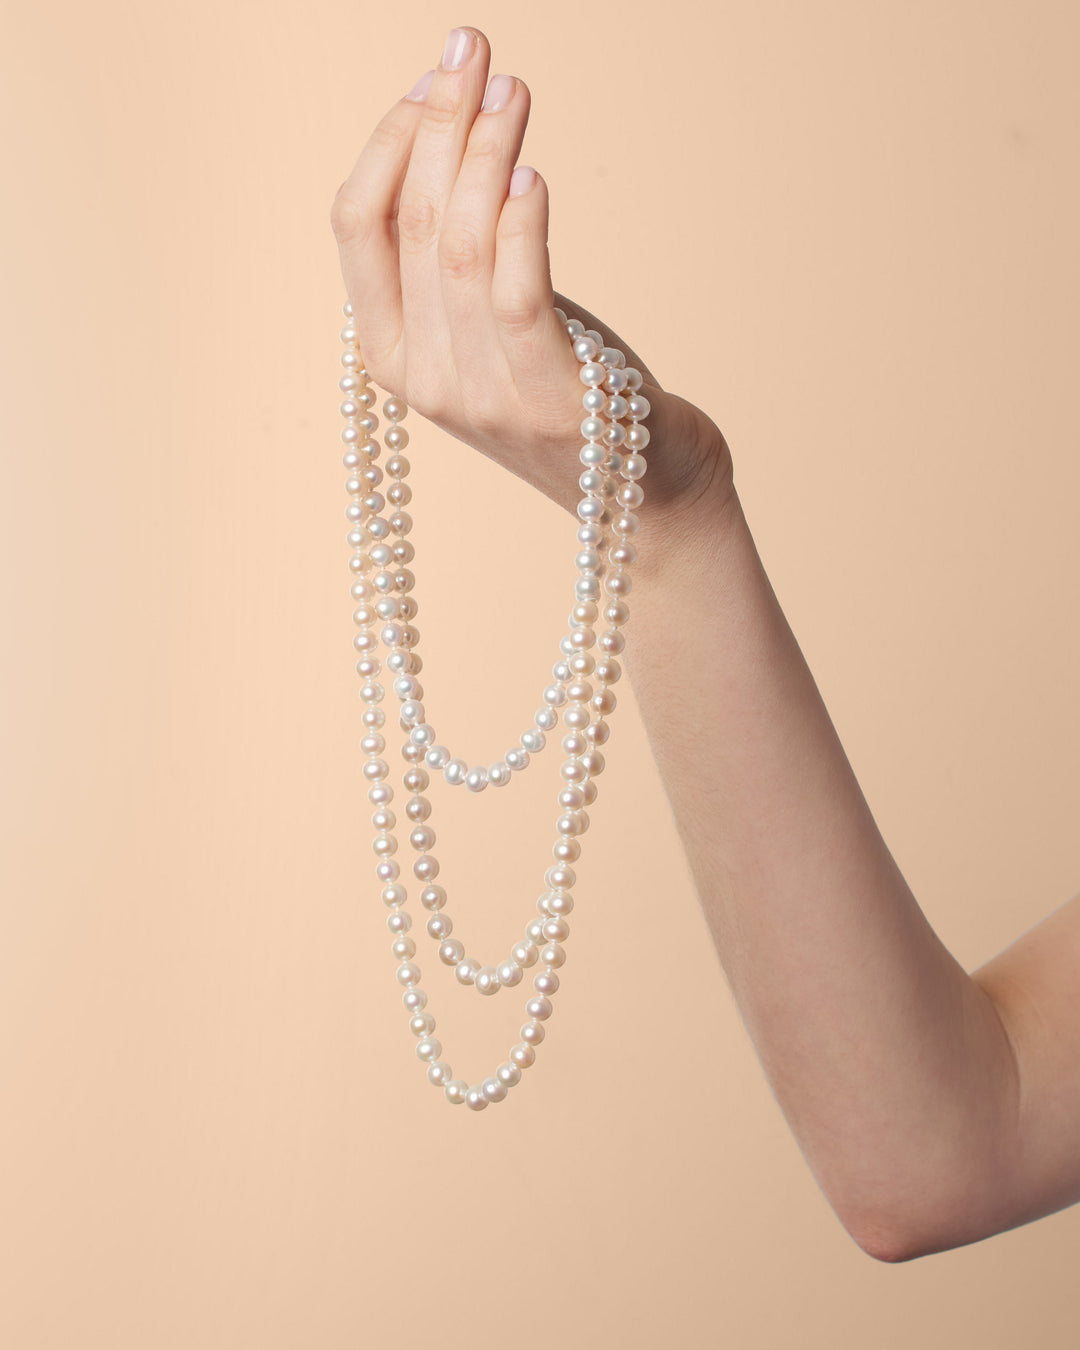 Comparing Hanadama and freshadama pearl necklaces